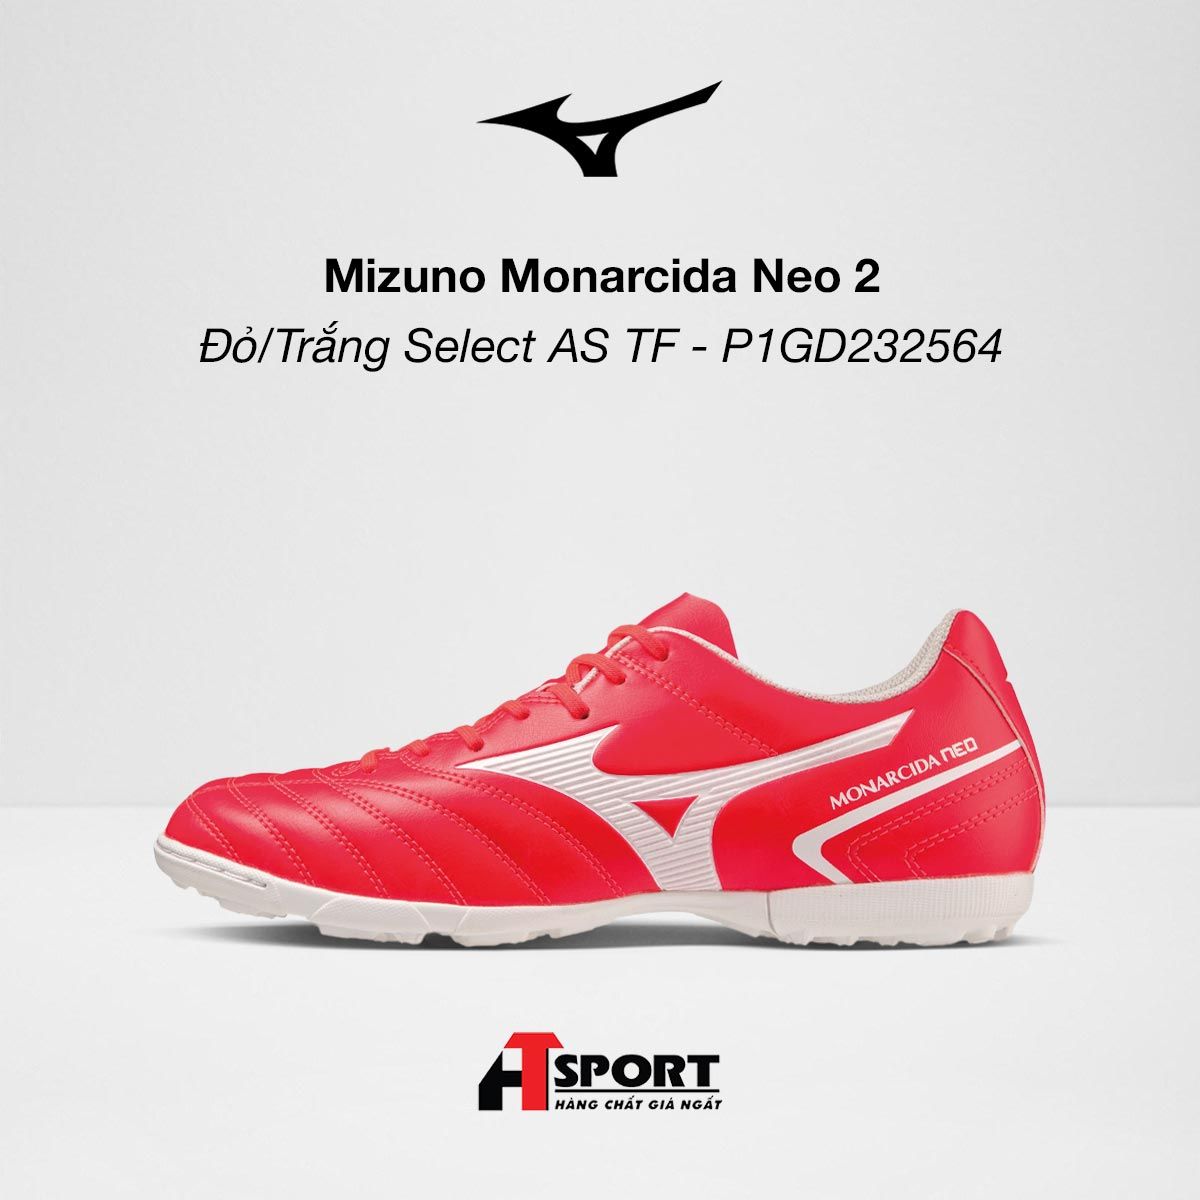  Mizuno Monarcida Neo 2 - Đỏ/Trắng Select AS TF - P1GD232564 